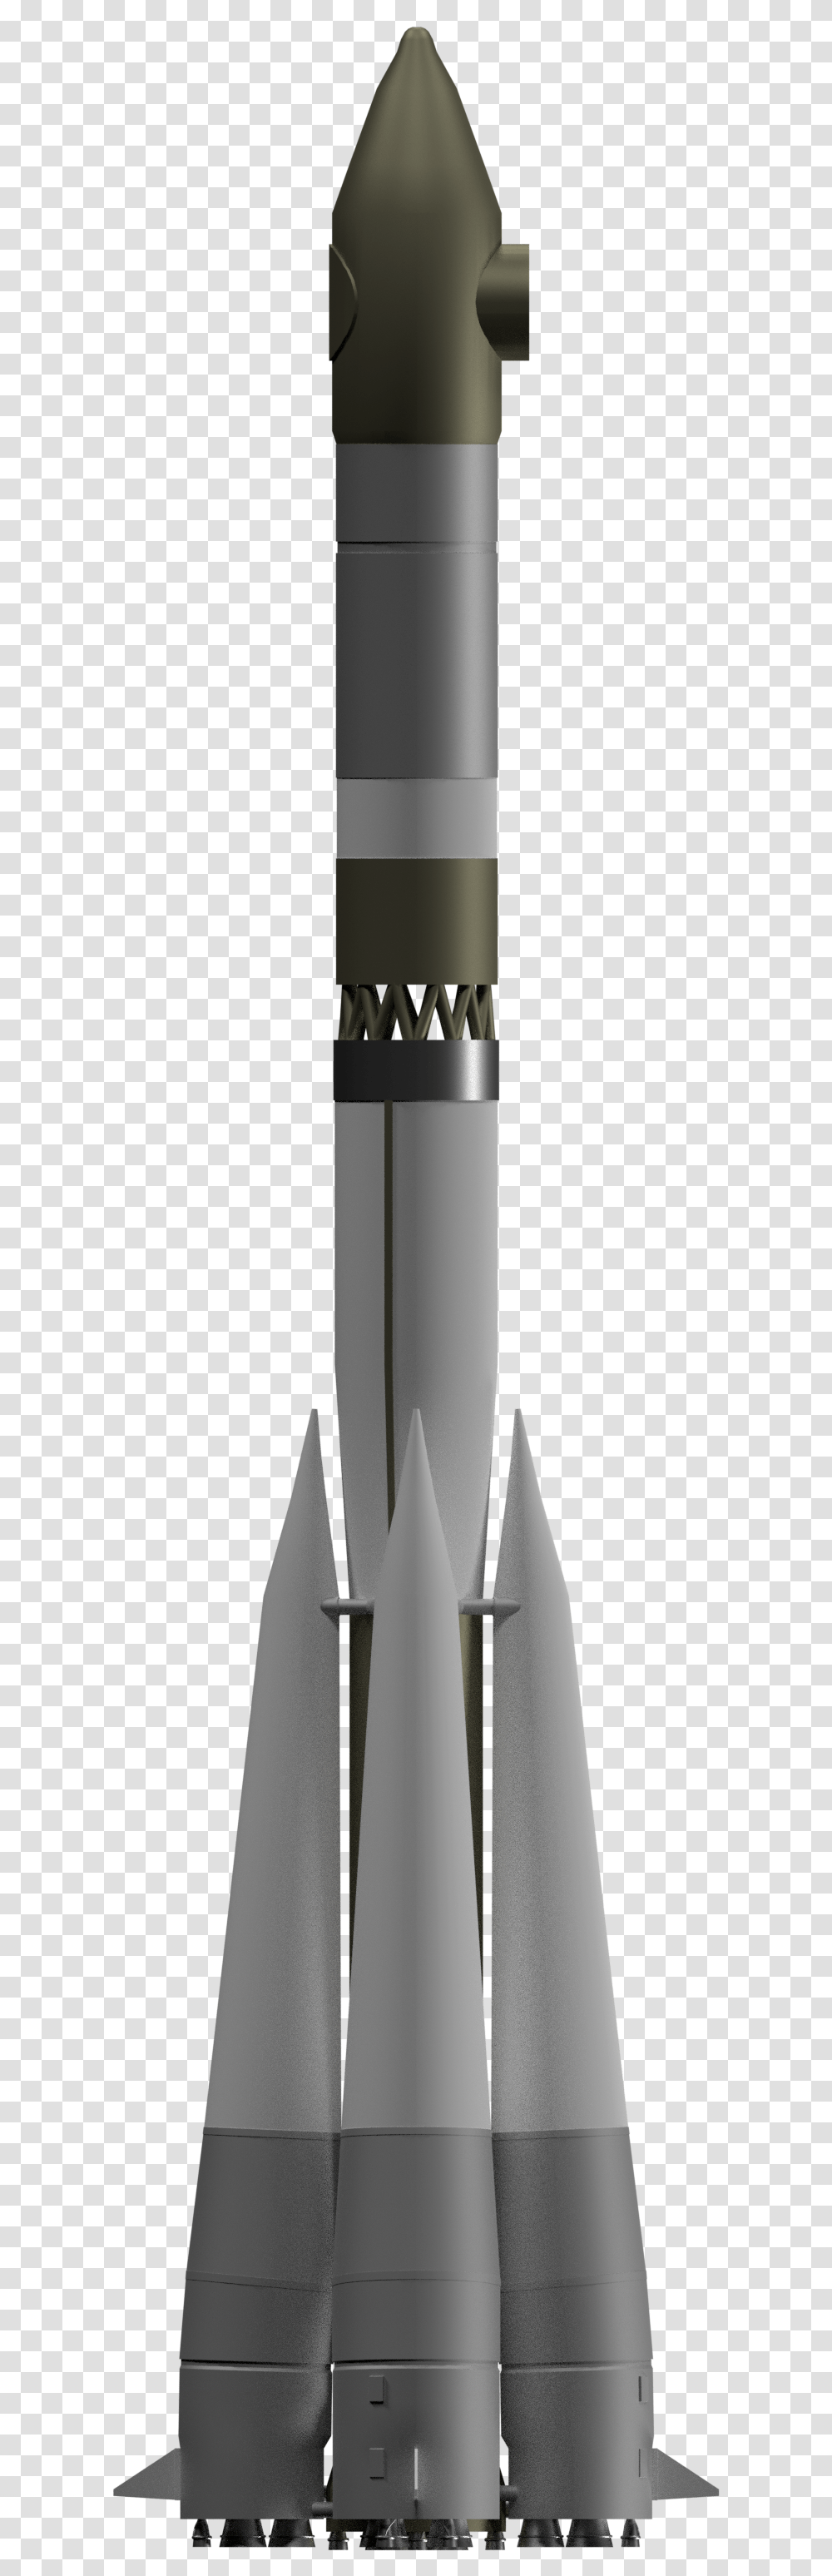 Voskhod Rocket, Vehicle, Transportation, Cylinder, Bottle Transparent Png